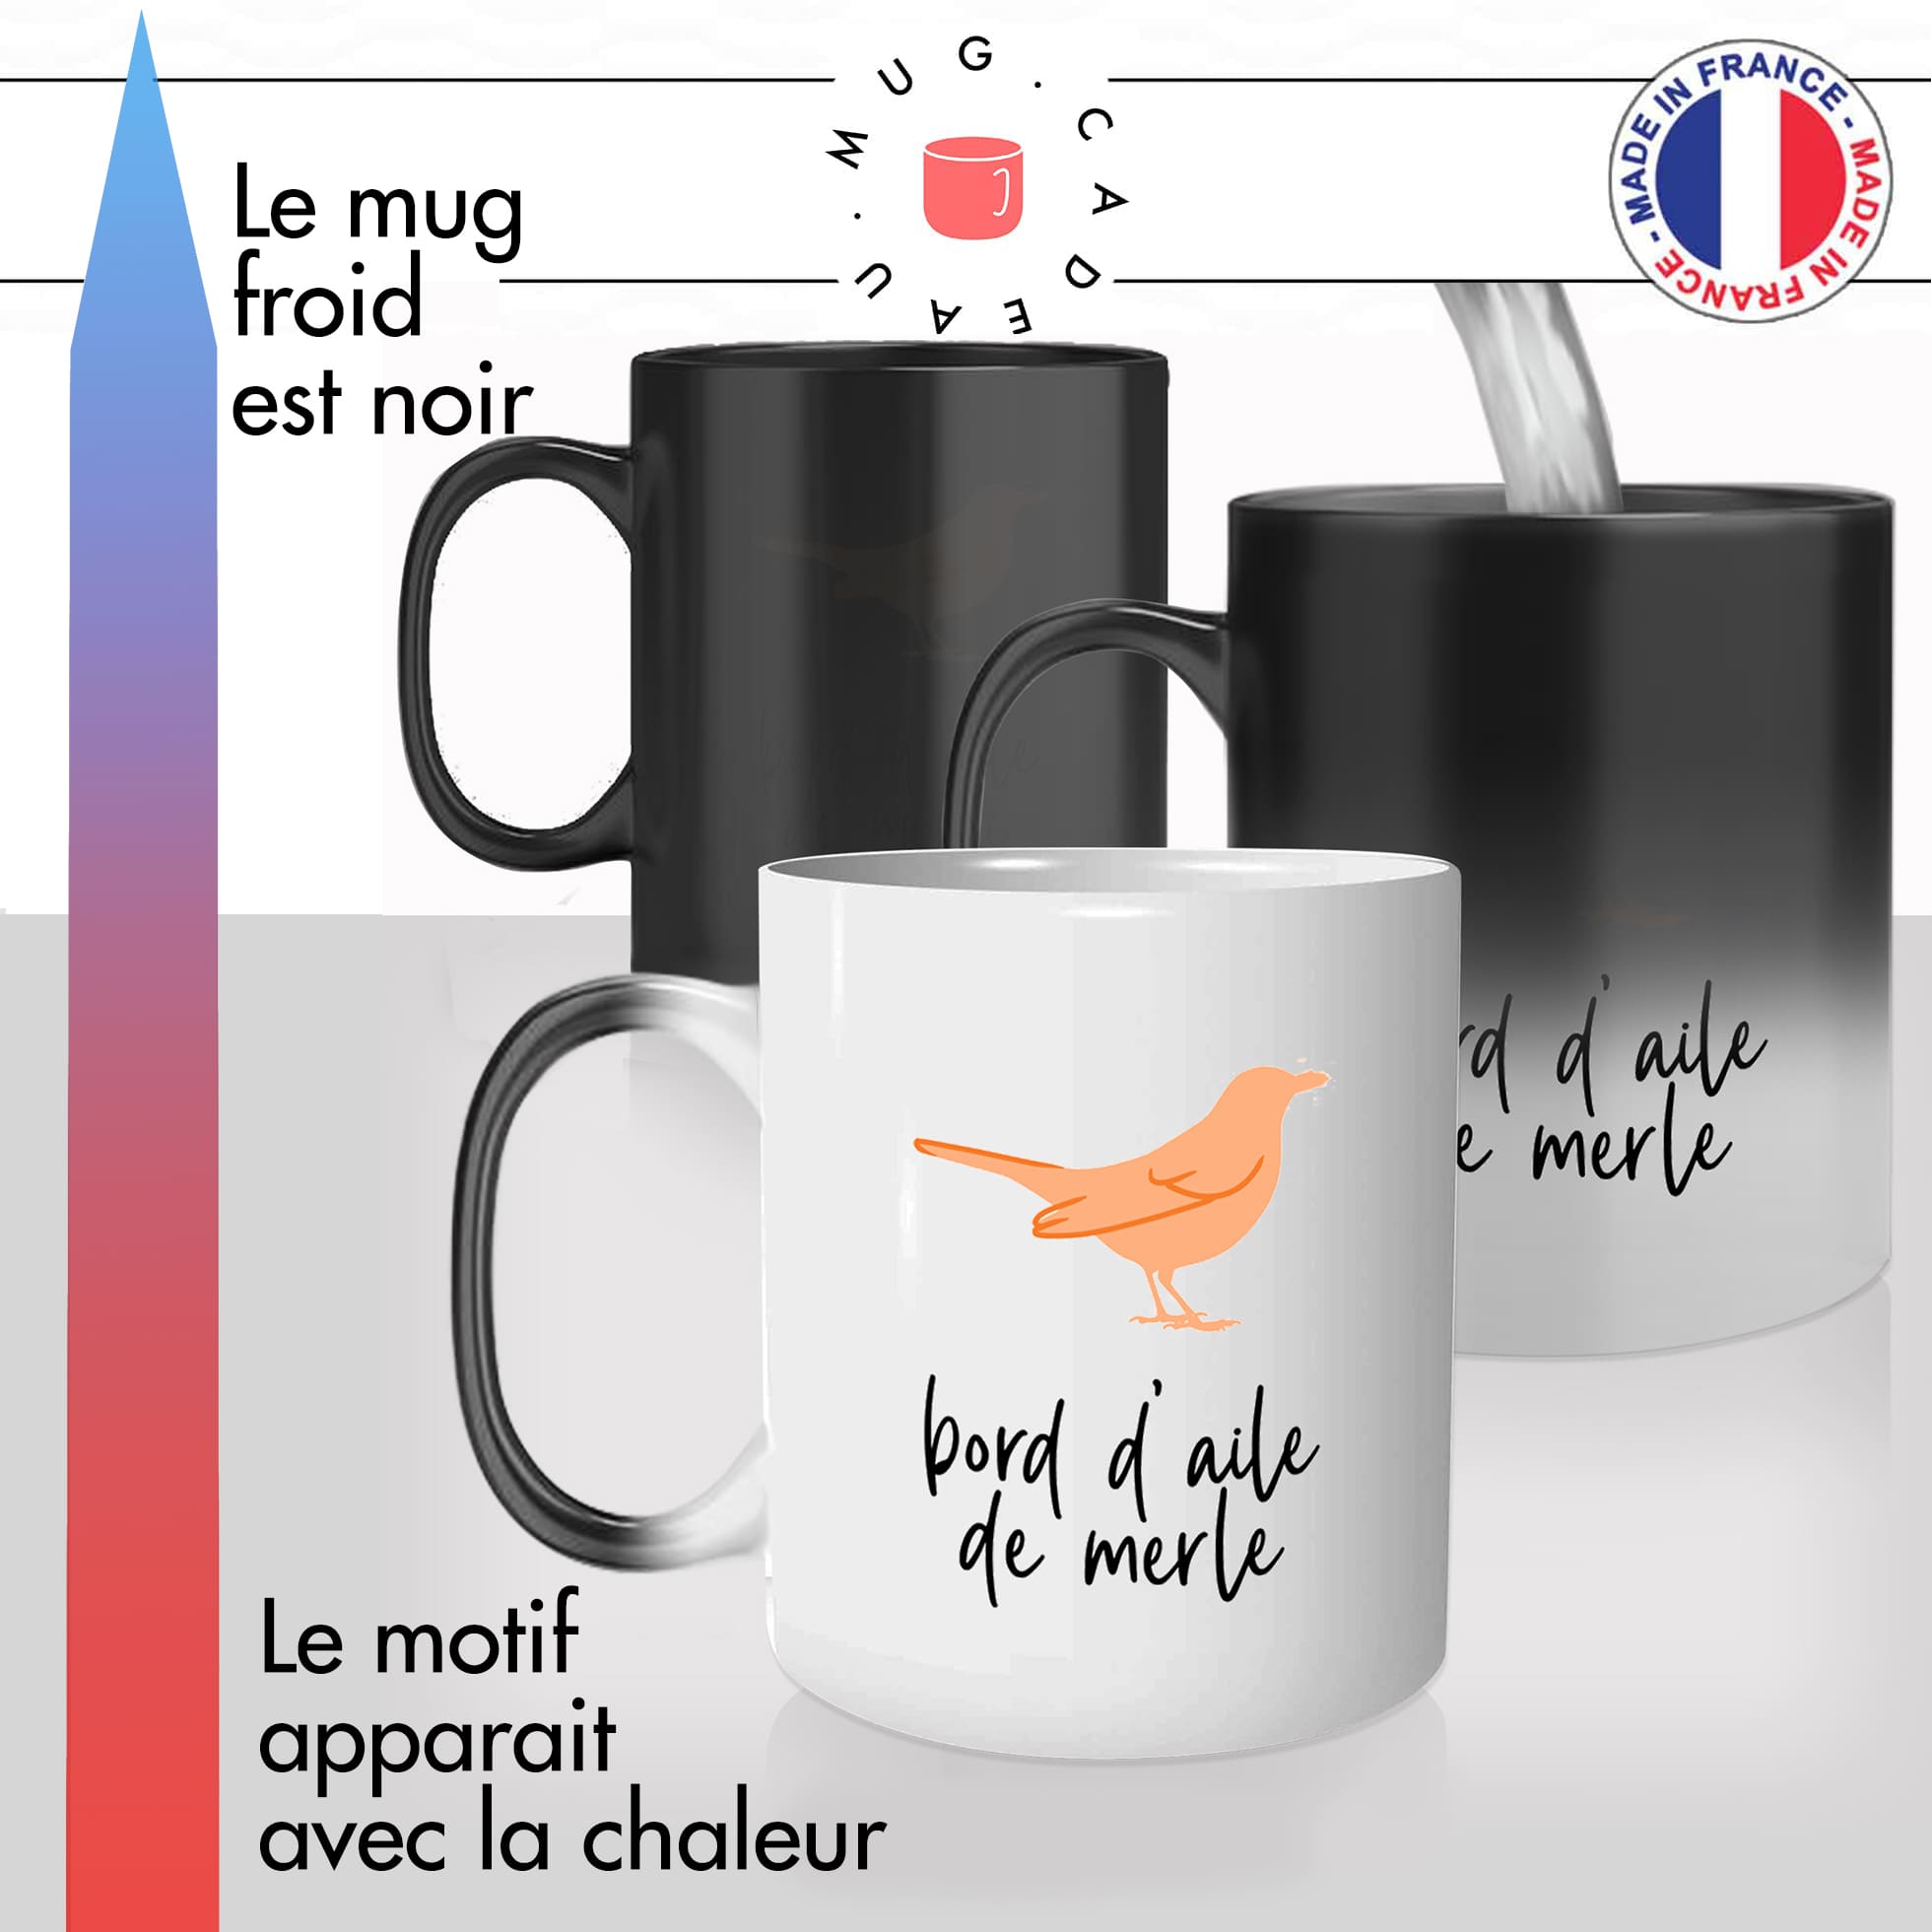 mug magique thermoréactif thermo chauffant personnalisé bord daile de merle oiseau bordel idée cadeau fun